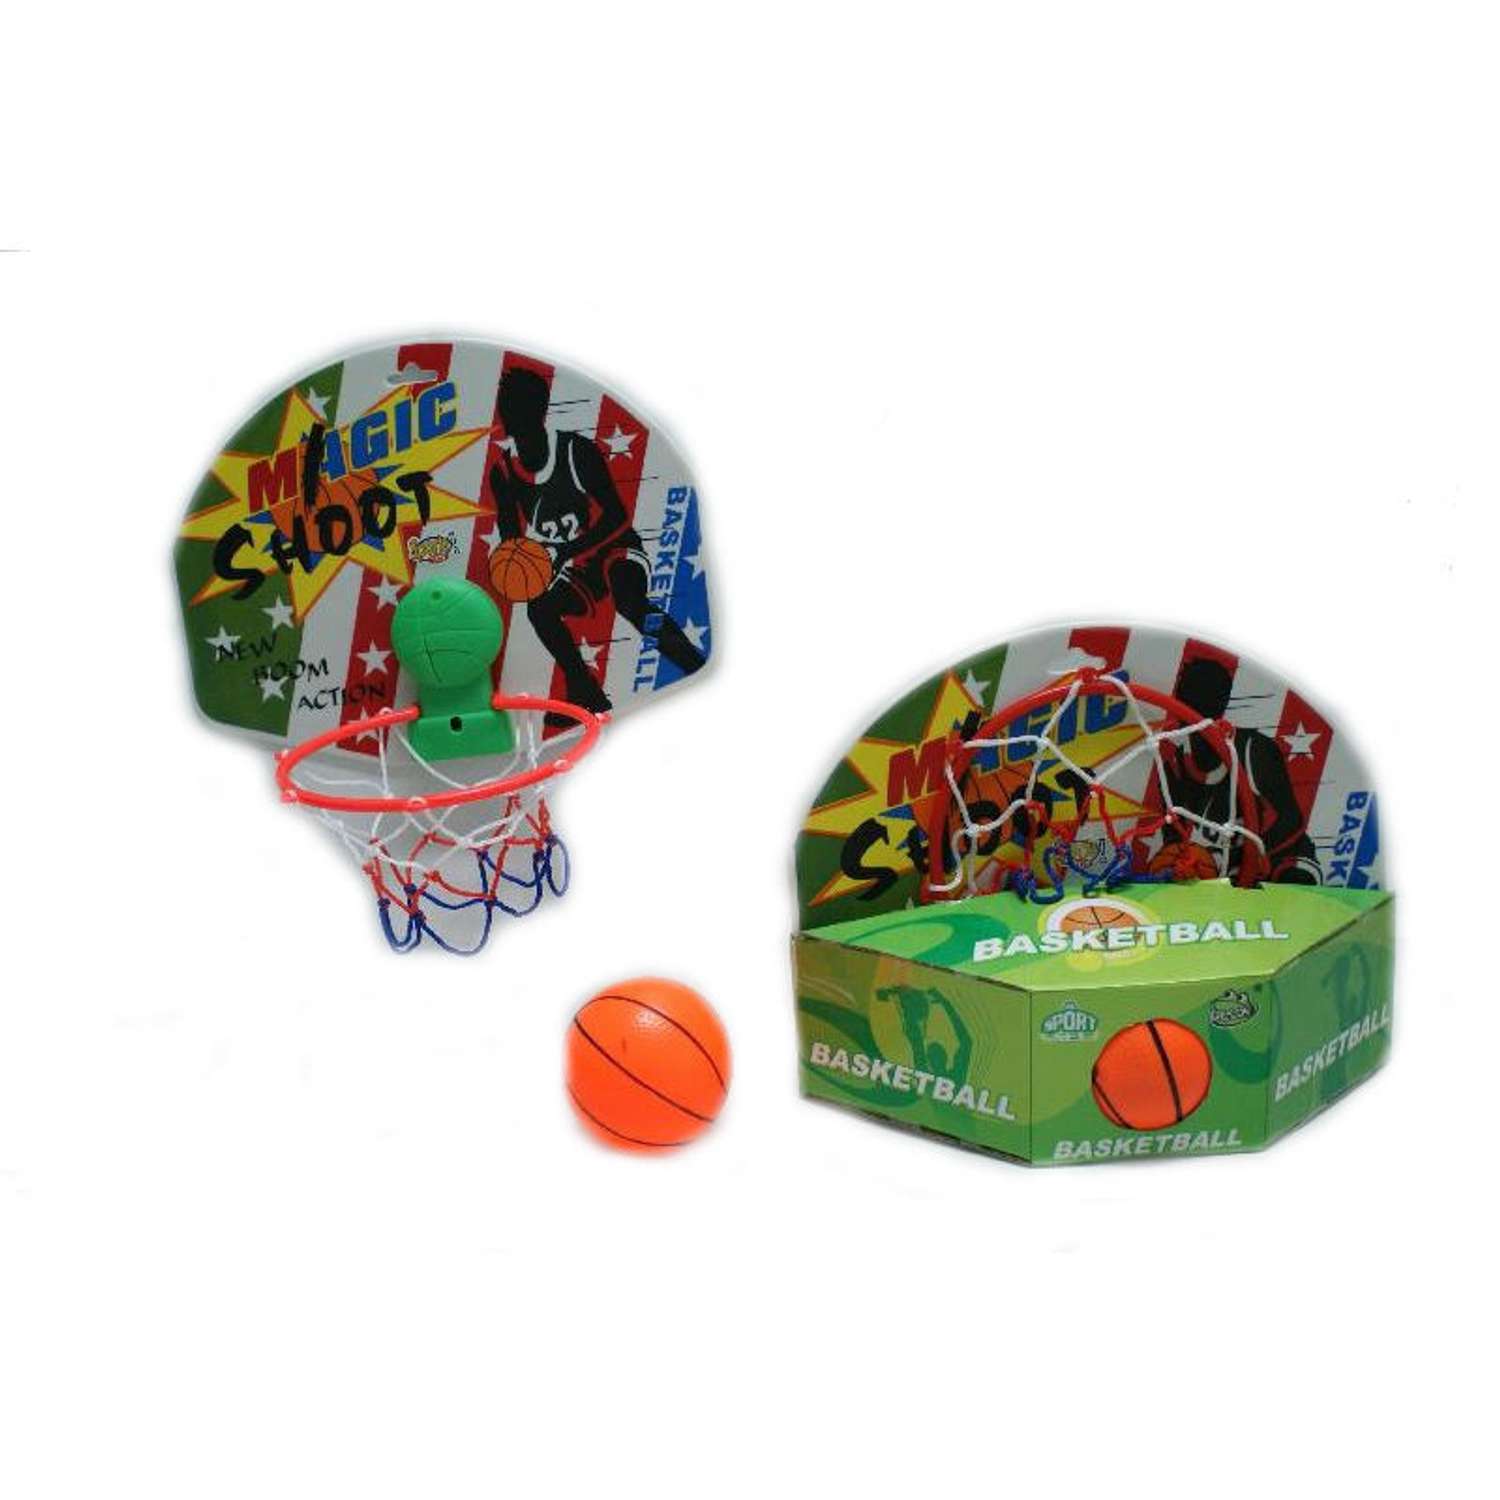 Баскетбольный набор Newsun Toys (баскетбольная доска, сетка, мяч) - фото 1